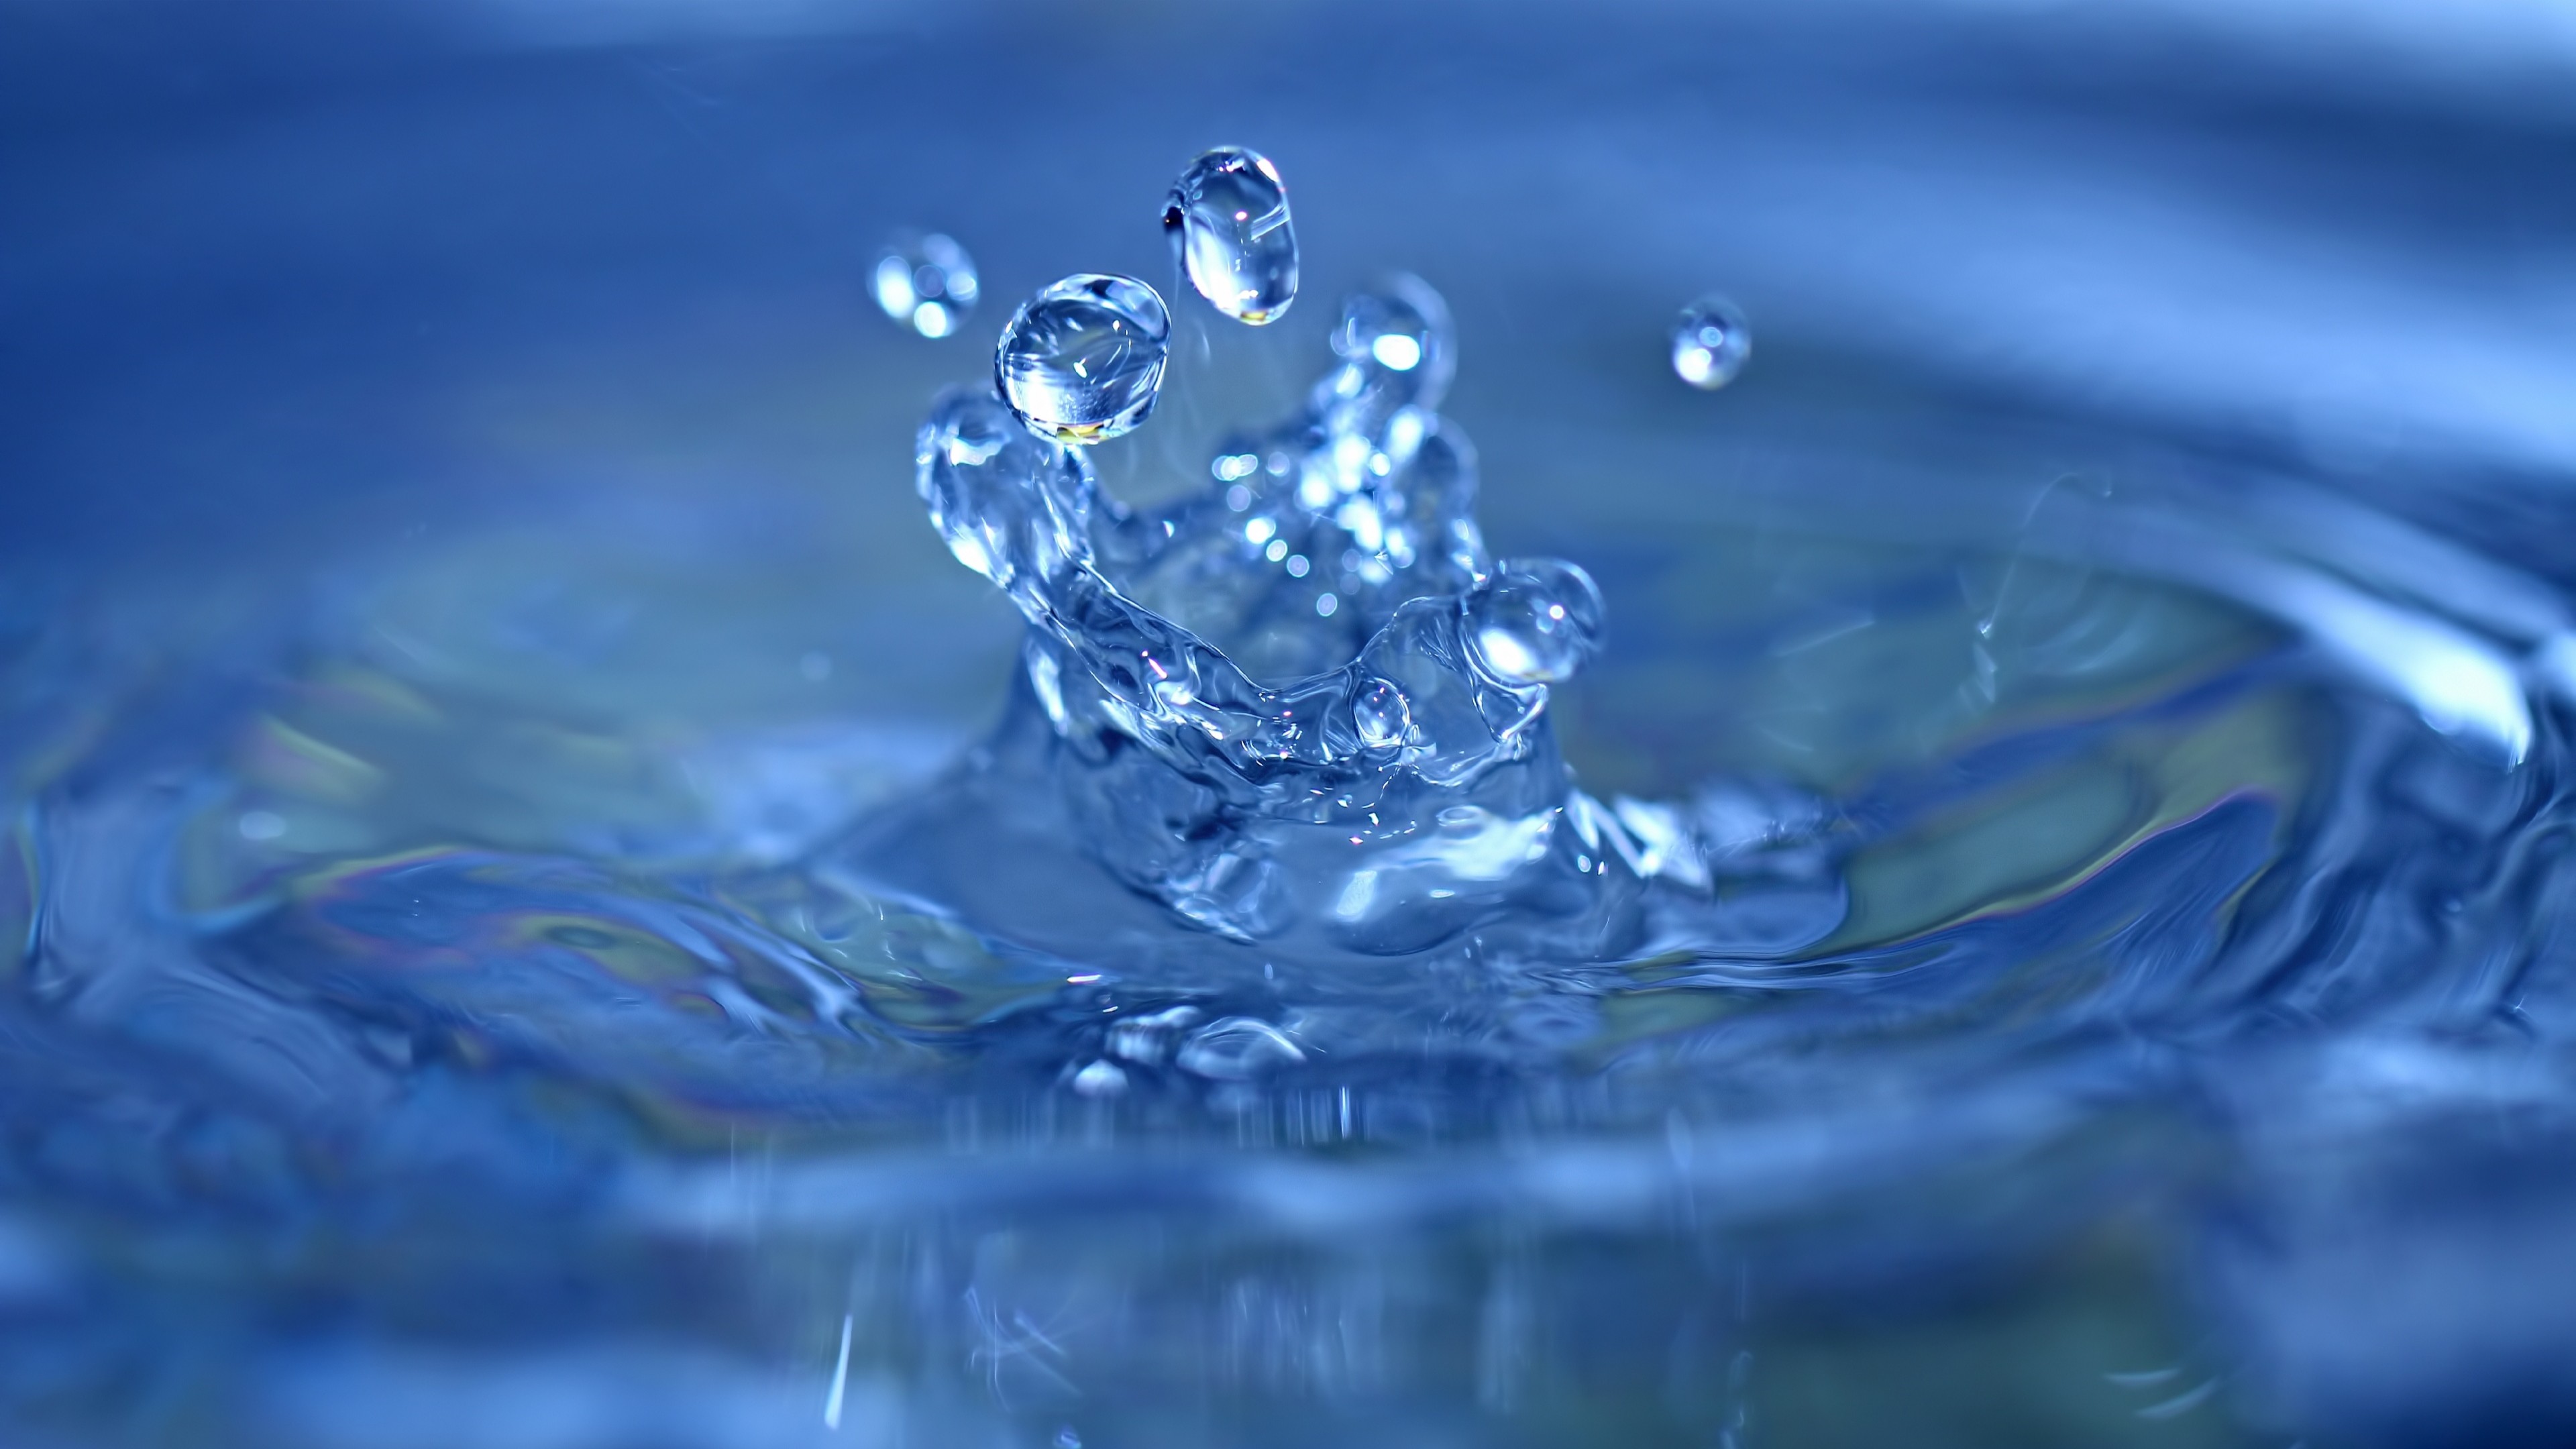 water image wallpaper,water,blue,drop,water resources,liquid